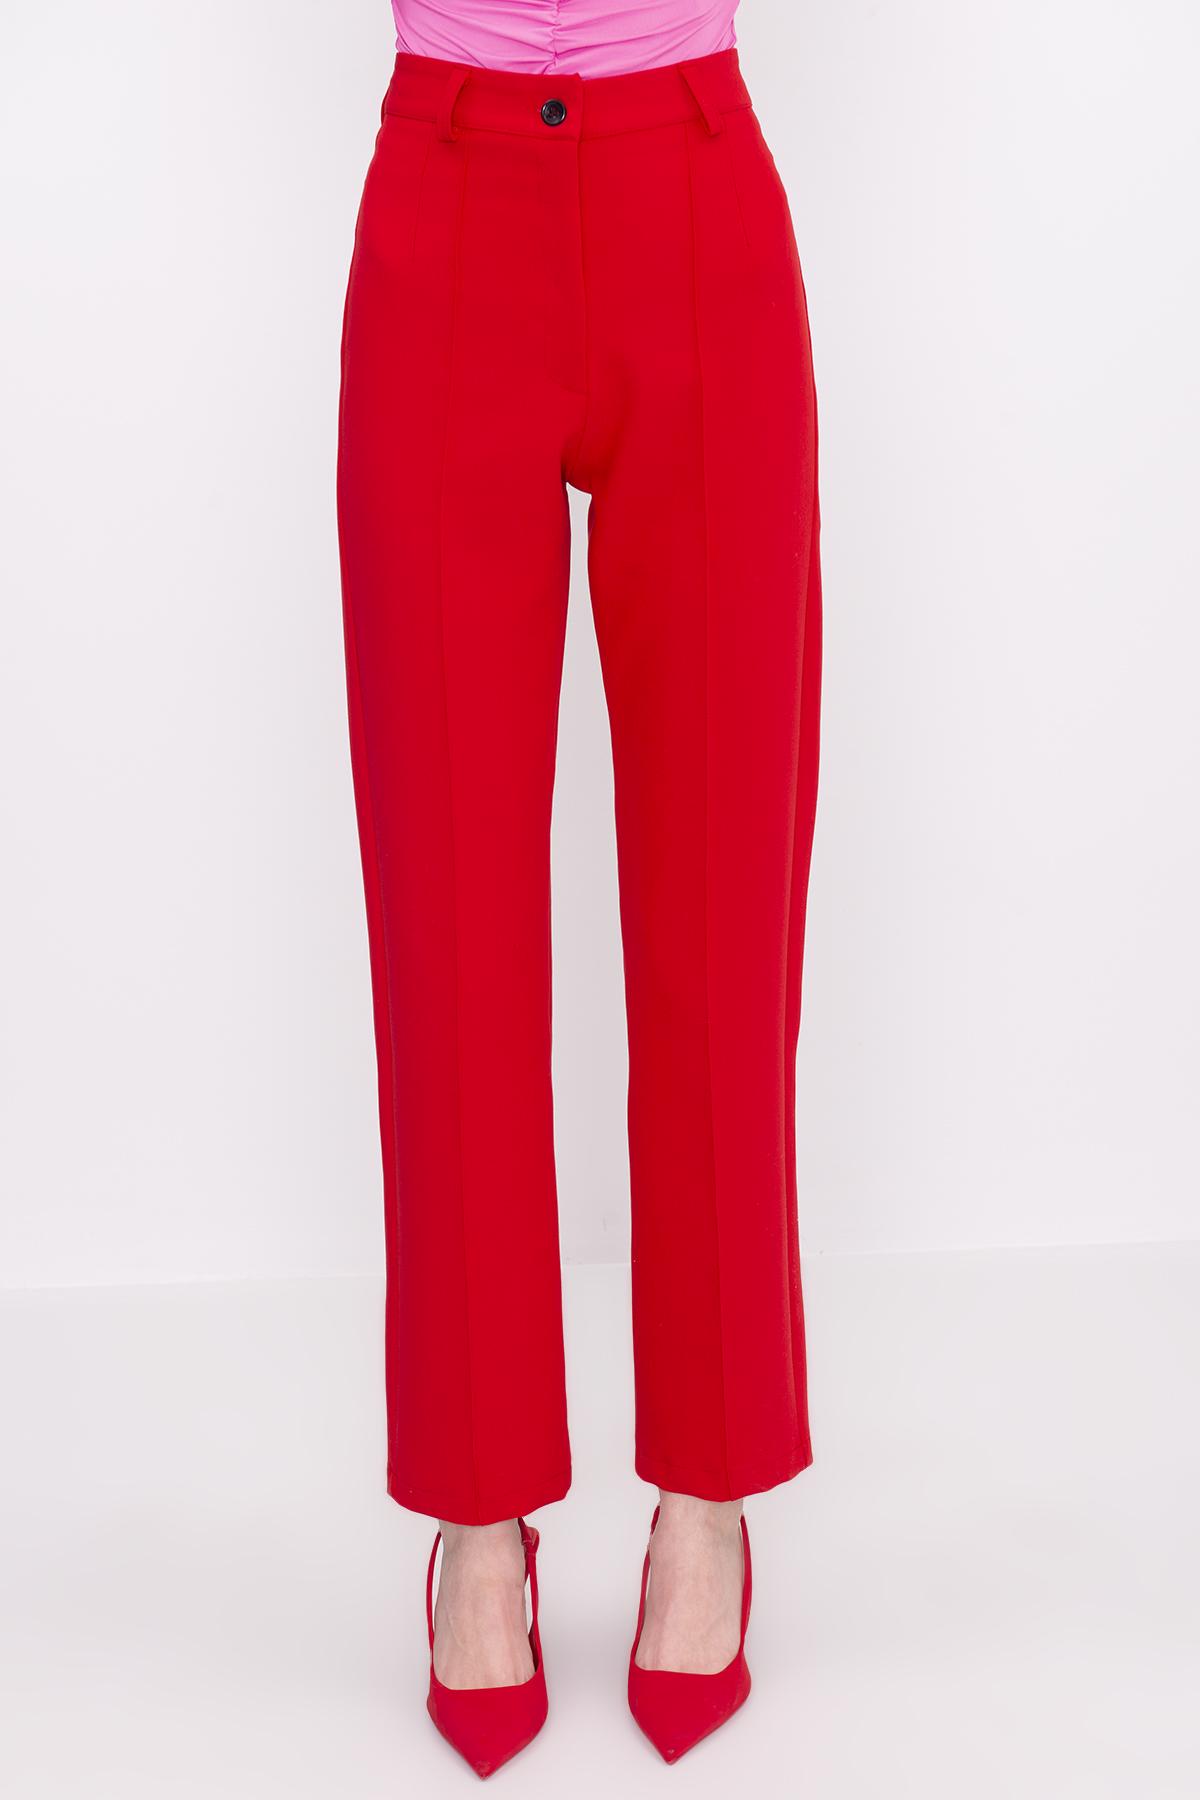 Bayan Kırmızı Yüksek Bel Nervür Dikişli Pantolon